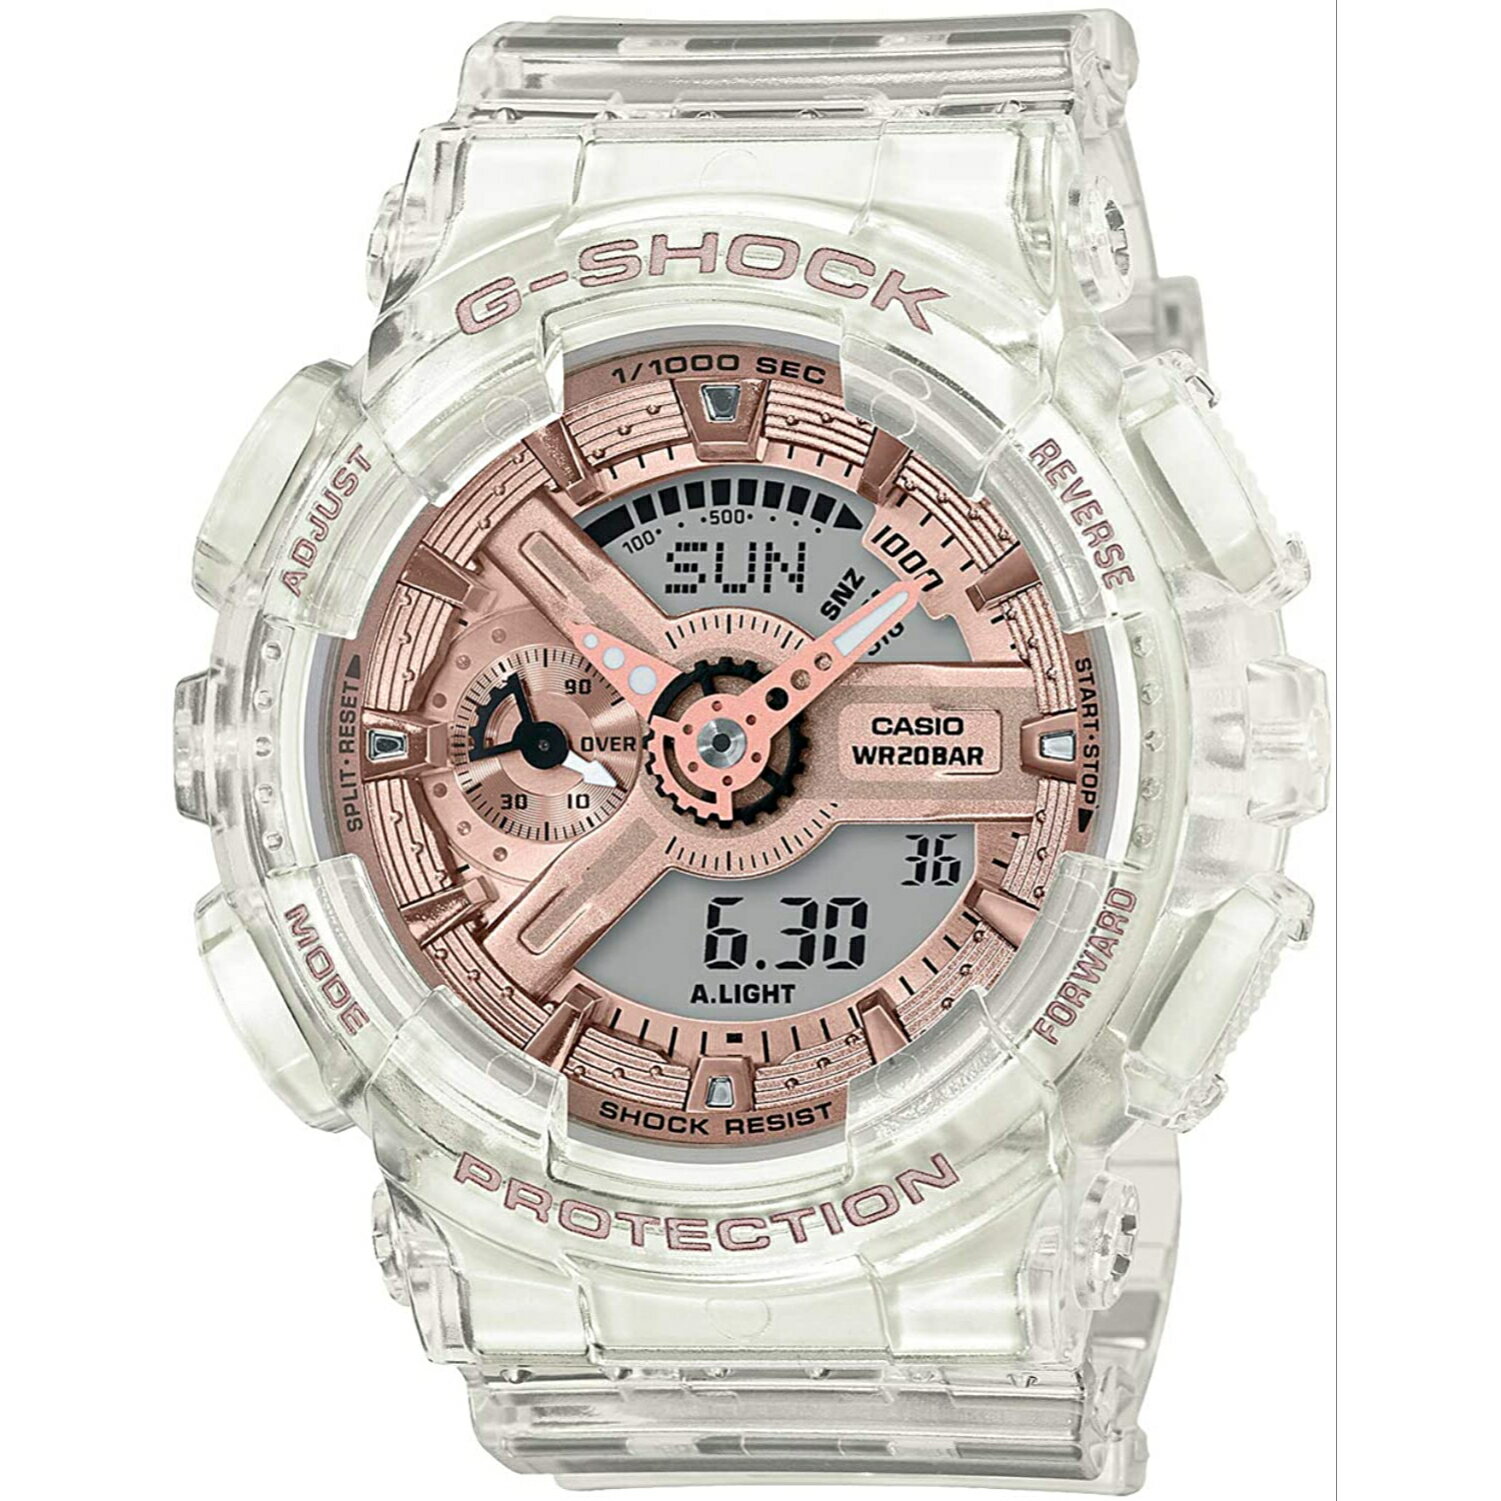 GMA-S110SR-7A G-SHOCK ホワイト スケルトン Gショック ジーショック CASIO カシオ ミッドサイズ メンズ 腕時計 正規輸入品